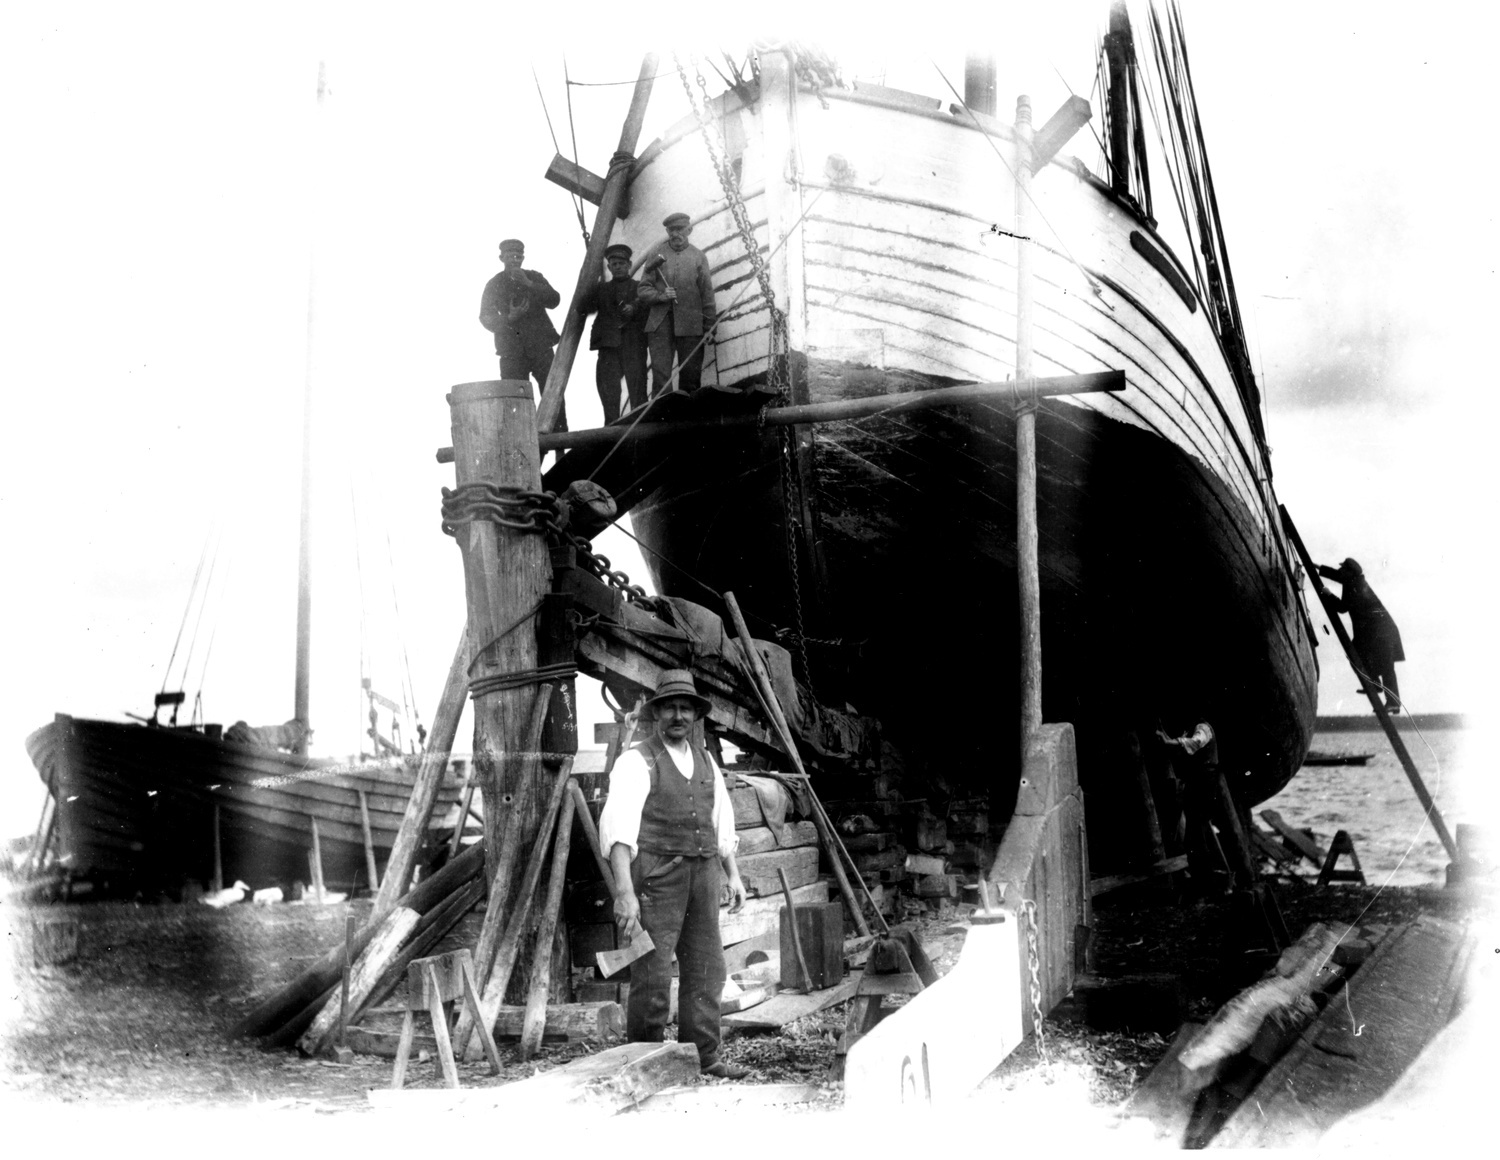 Najpierw powstało zdjęcie. Hans Hartig, W stoczni, fotografia, 1924